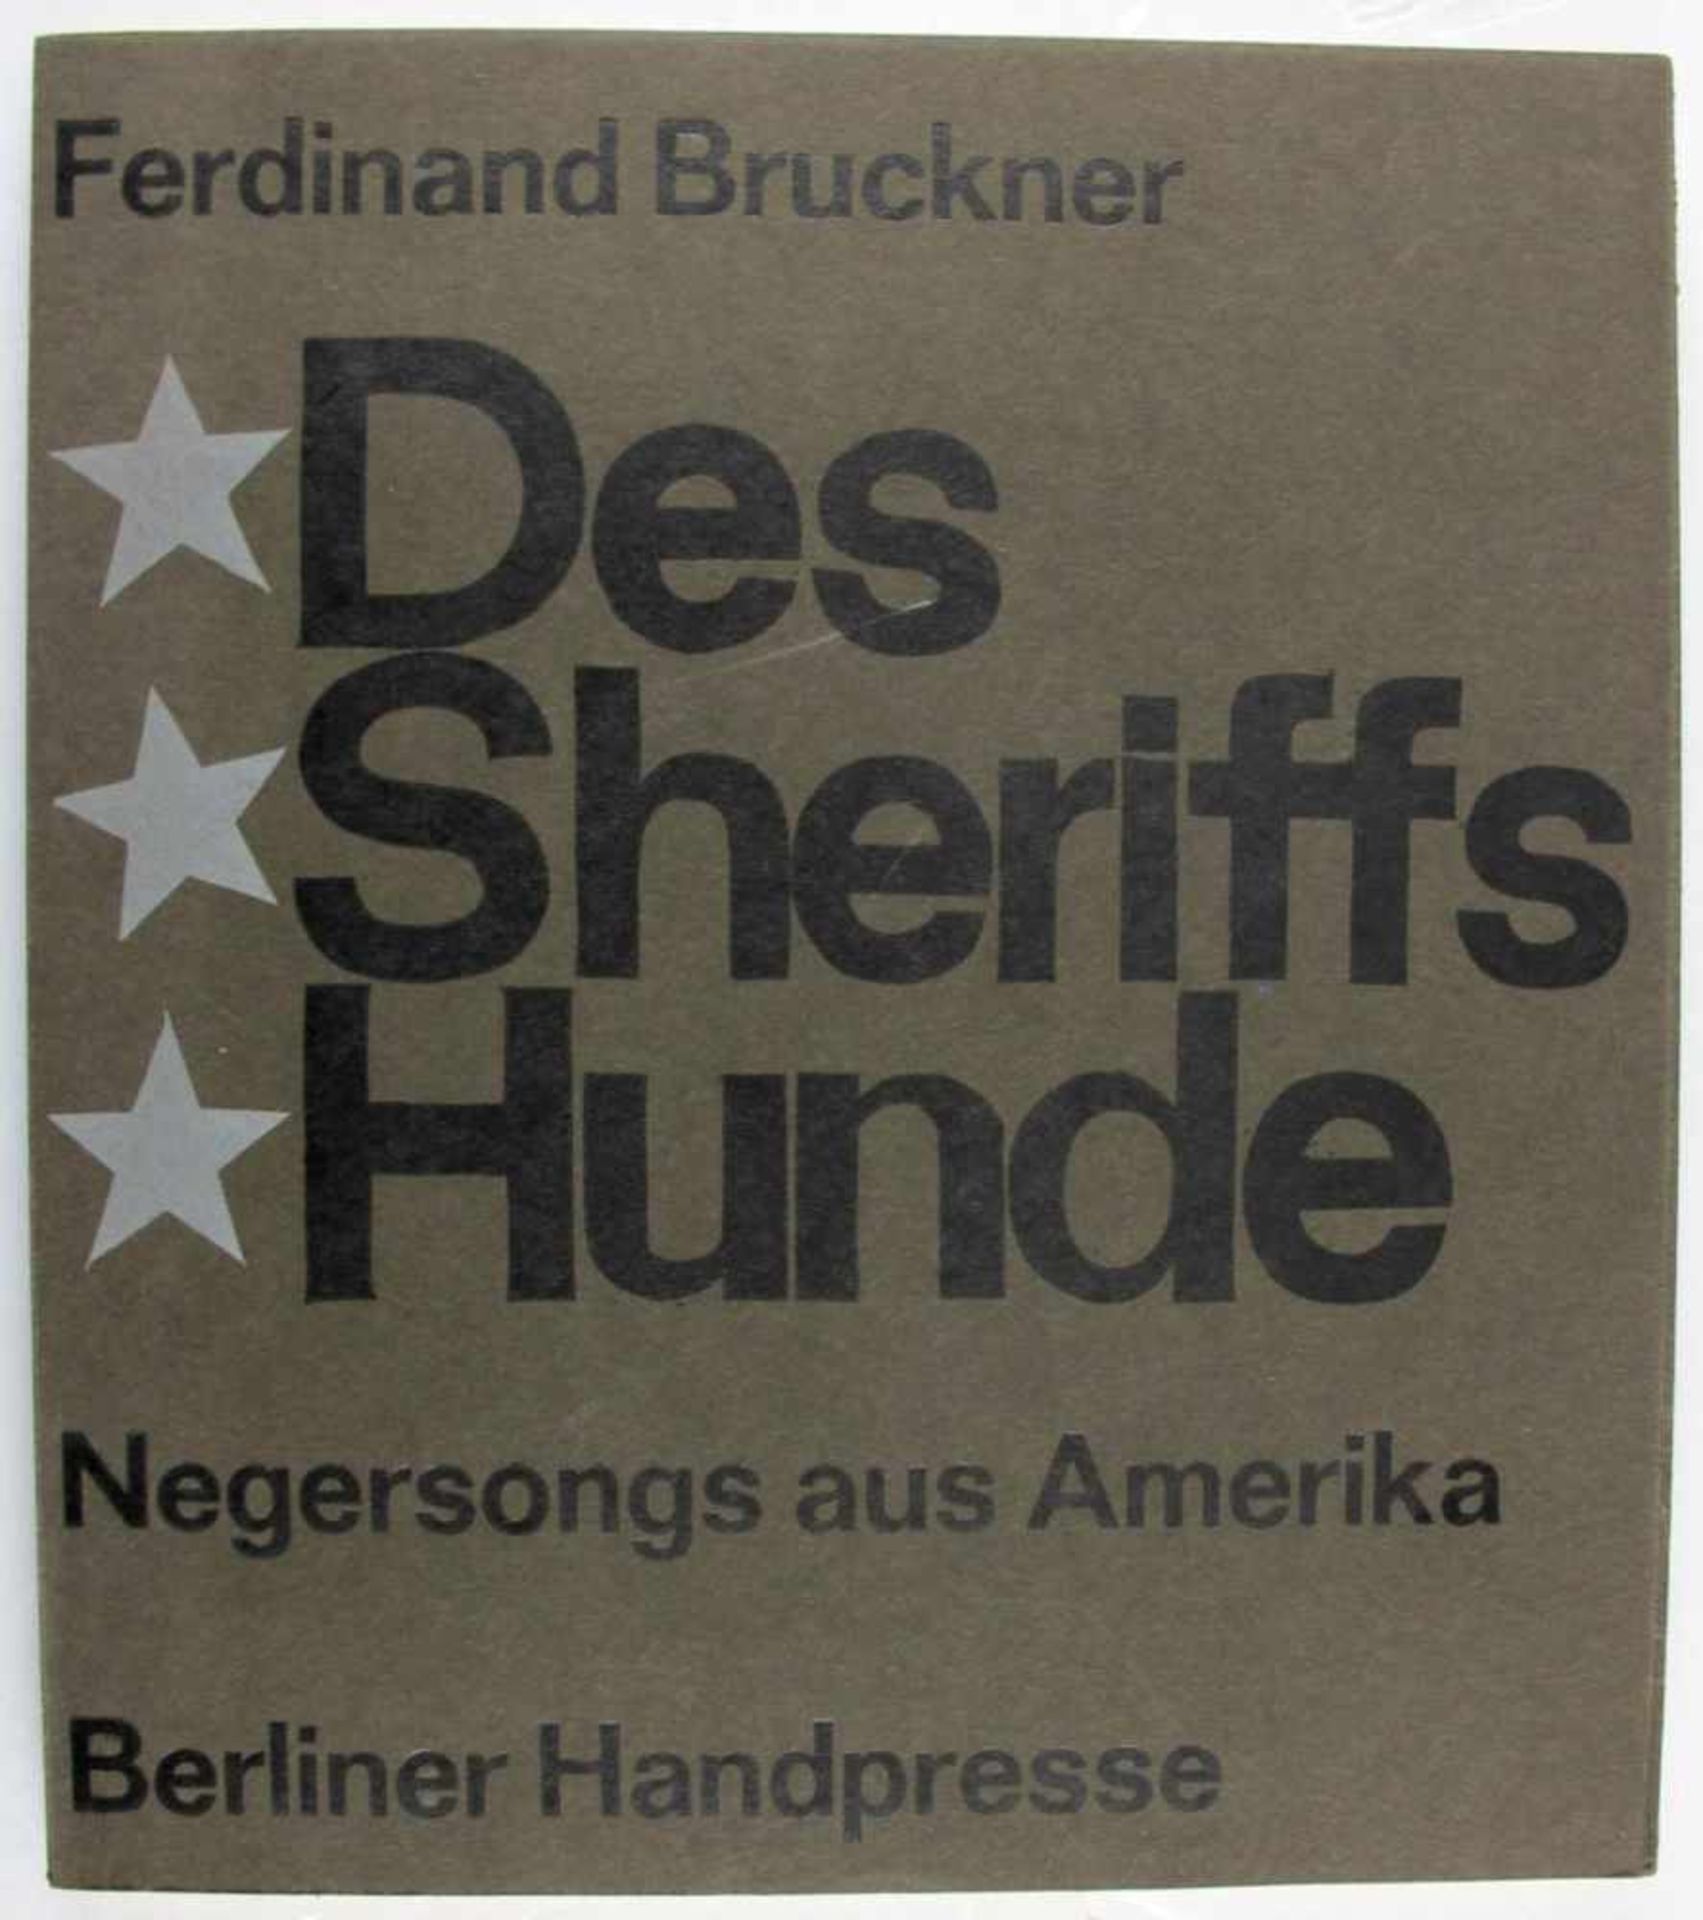 Kunst: Huder, Walther (Hrsg.). Ferdinand Bruckner. Des Sheriffs Hunde. Negersongs aus Amerika.